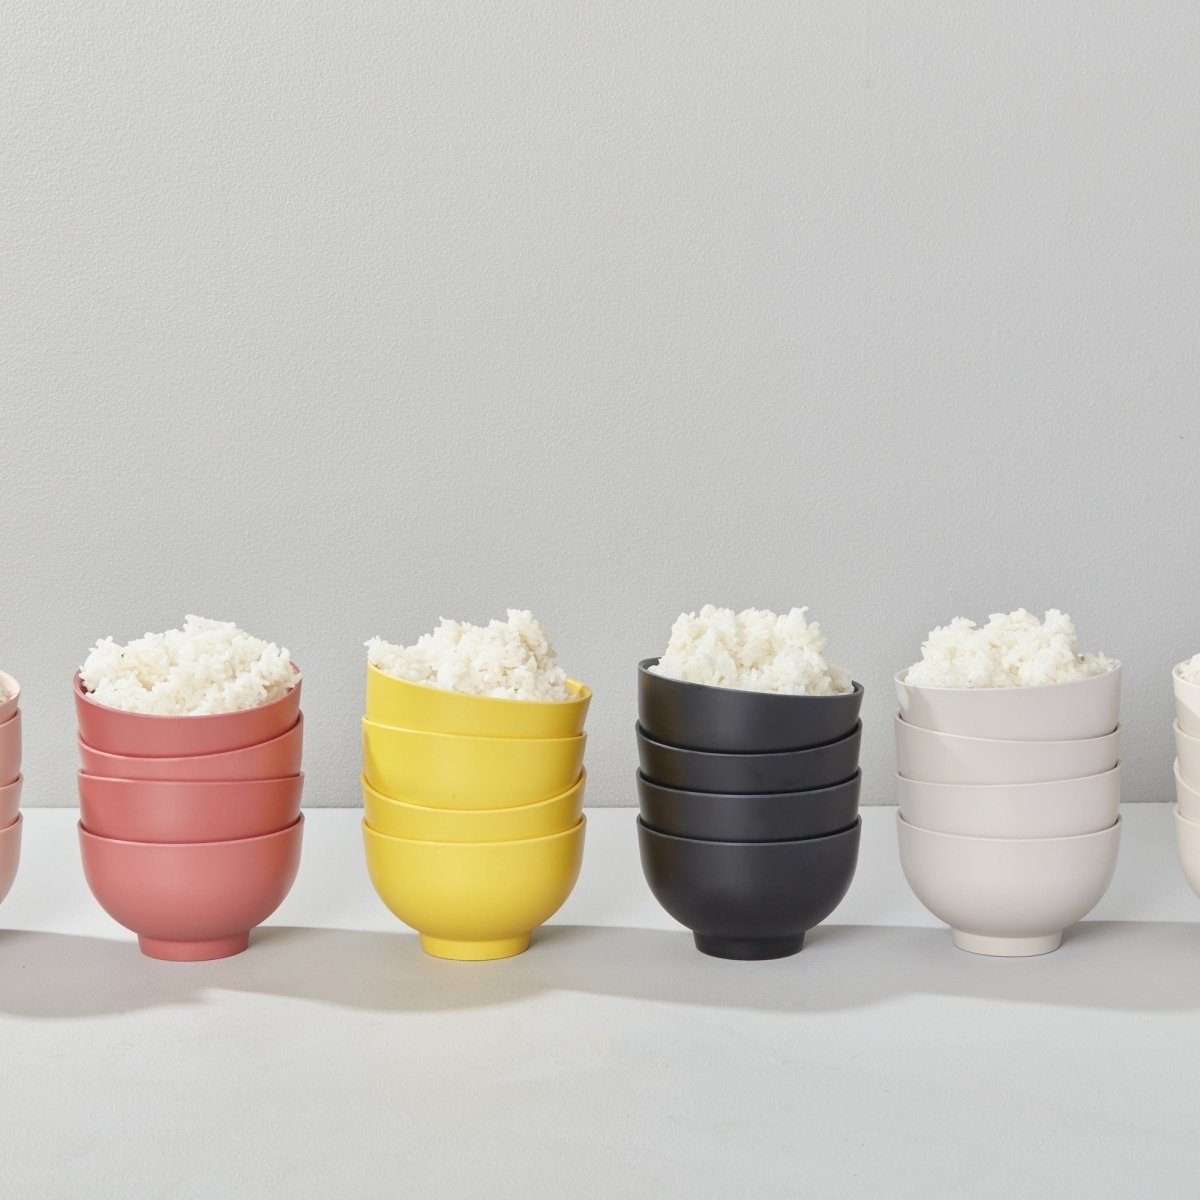 EKOBO Rice Bowl Set, Set of 4 - Stone - lily & onyx